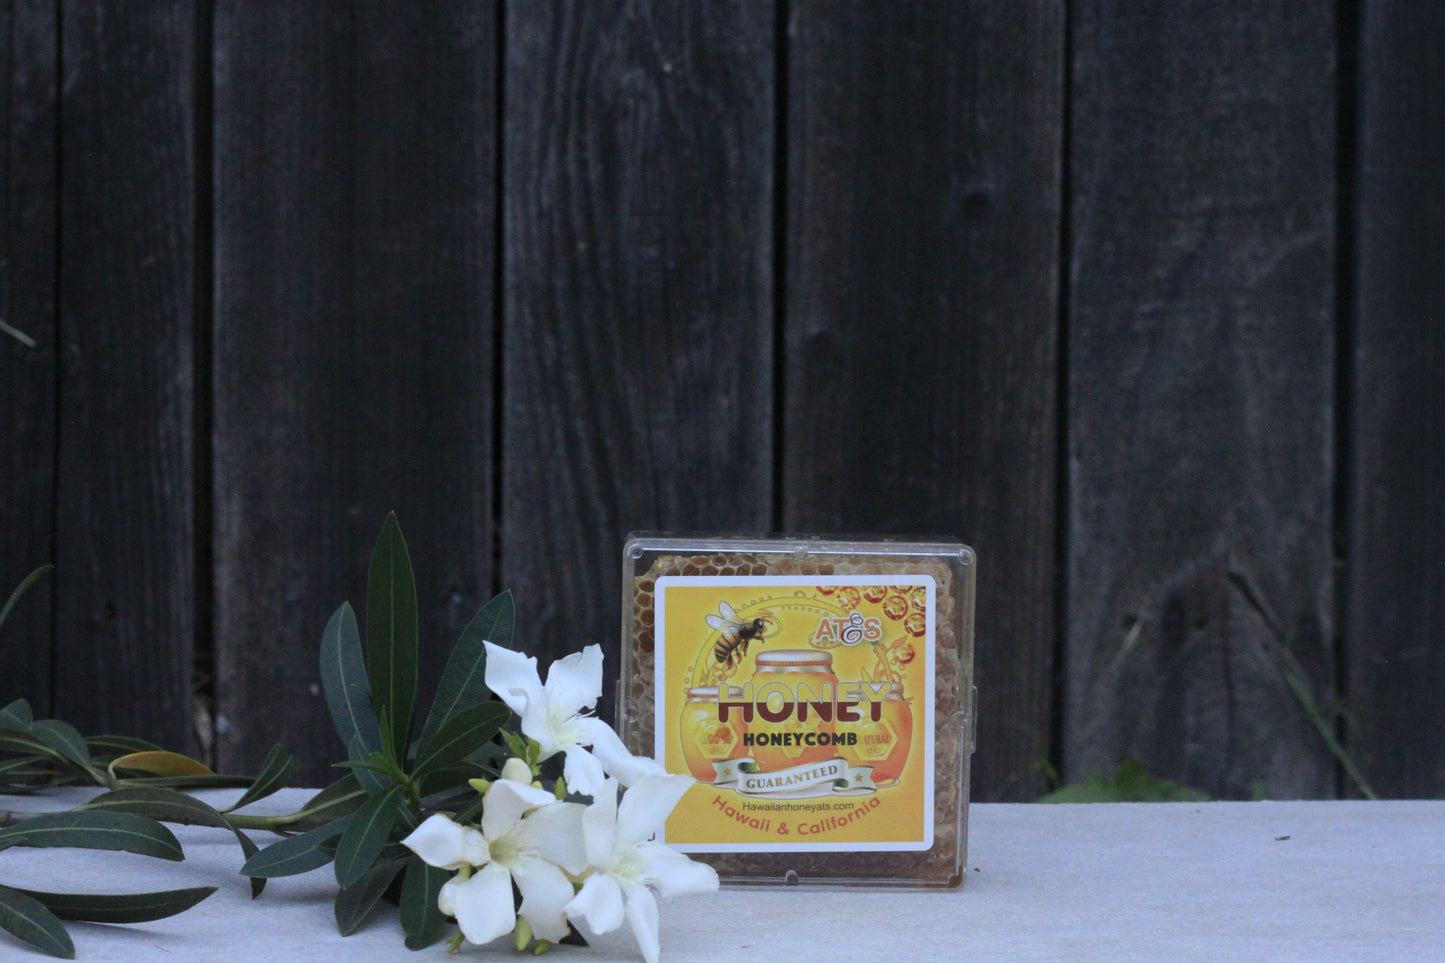 Honeycomb - Hawaiian Honey AT&S